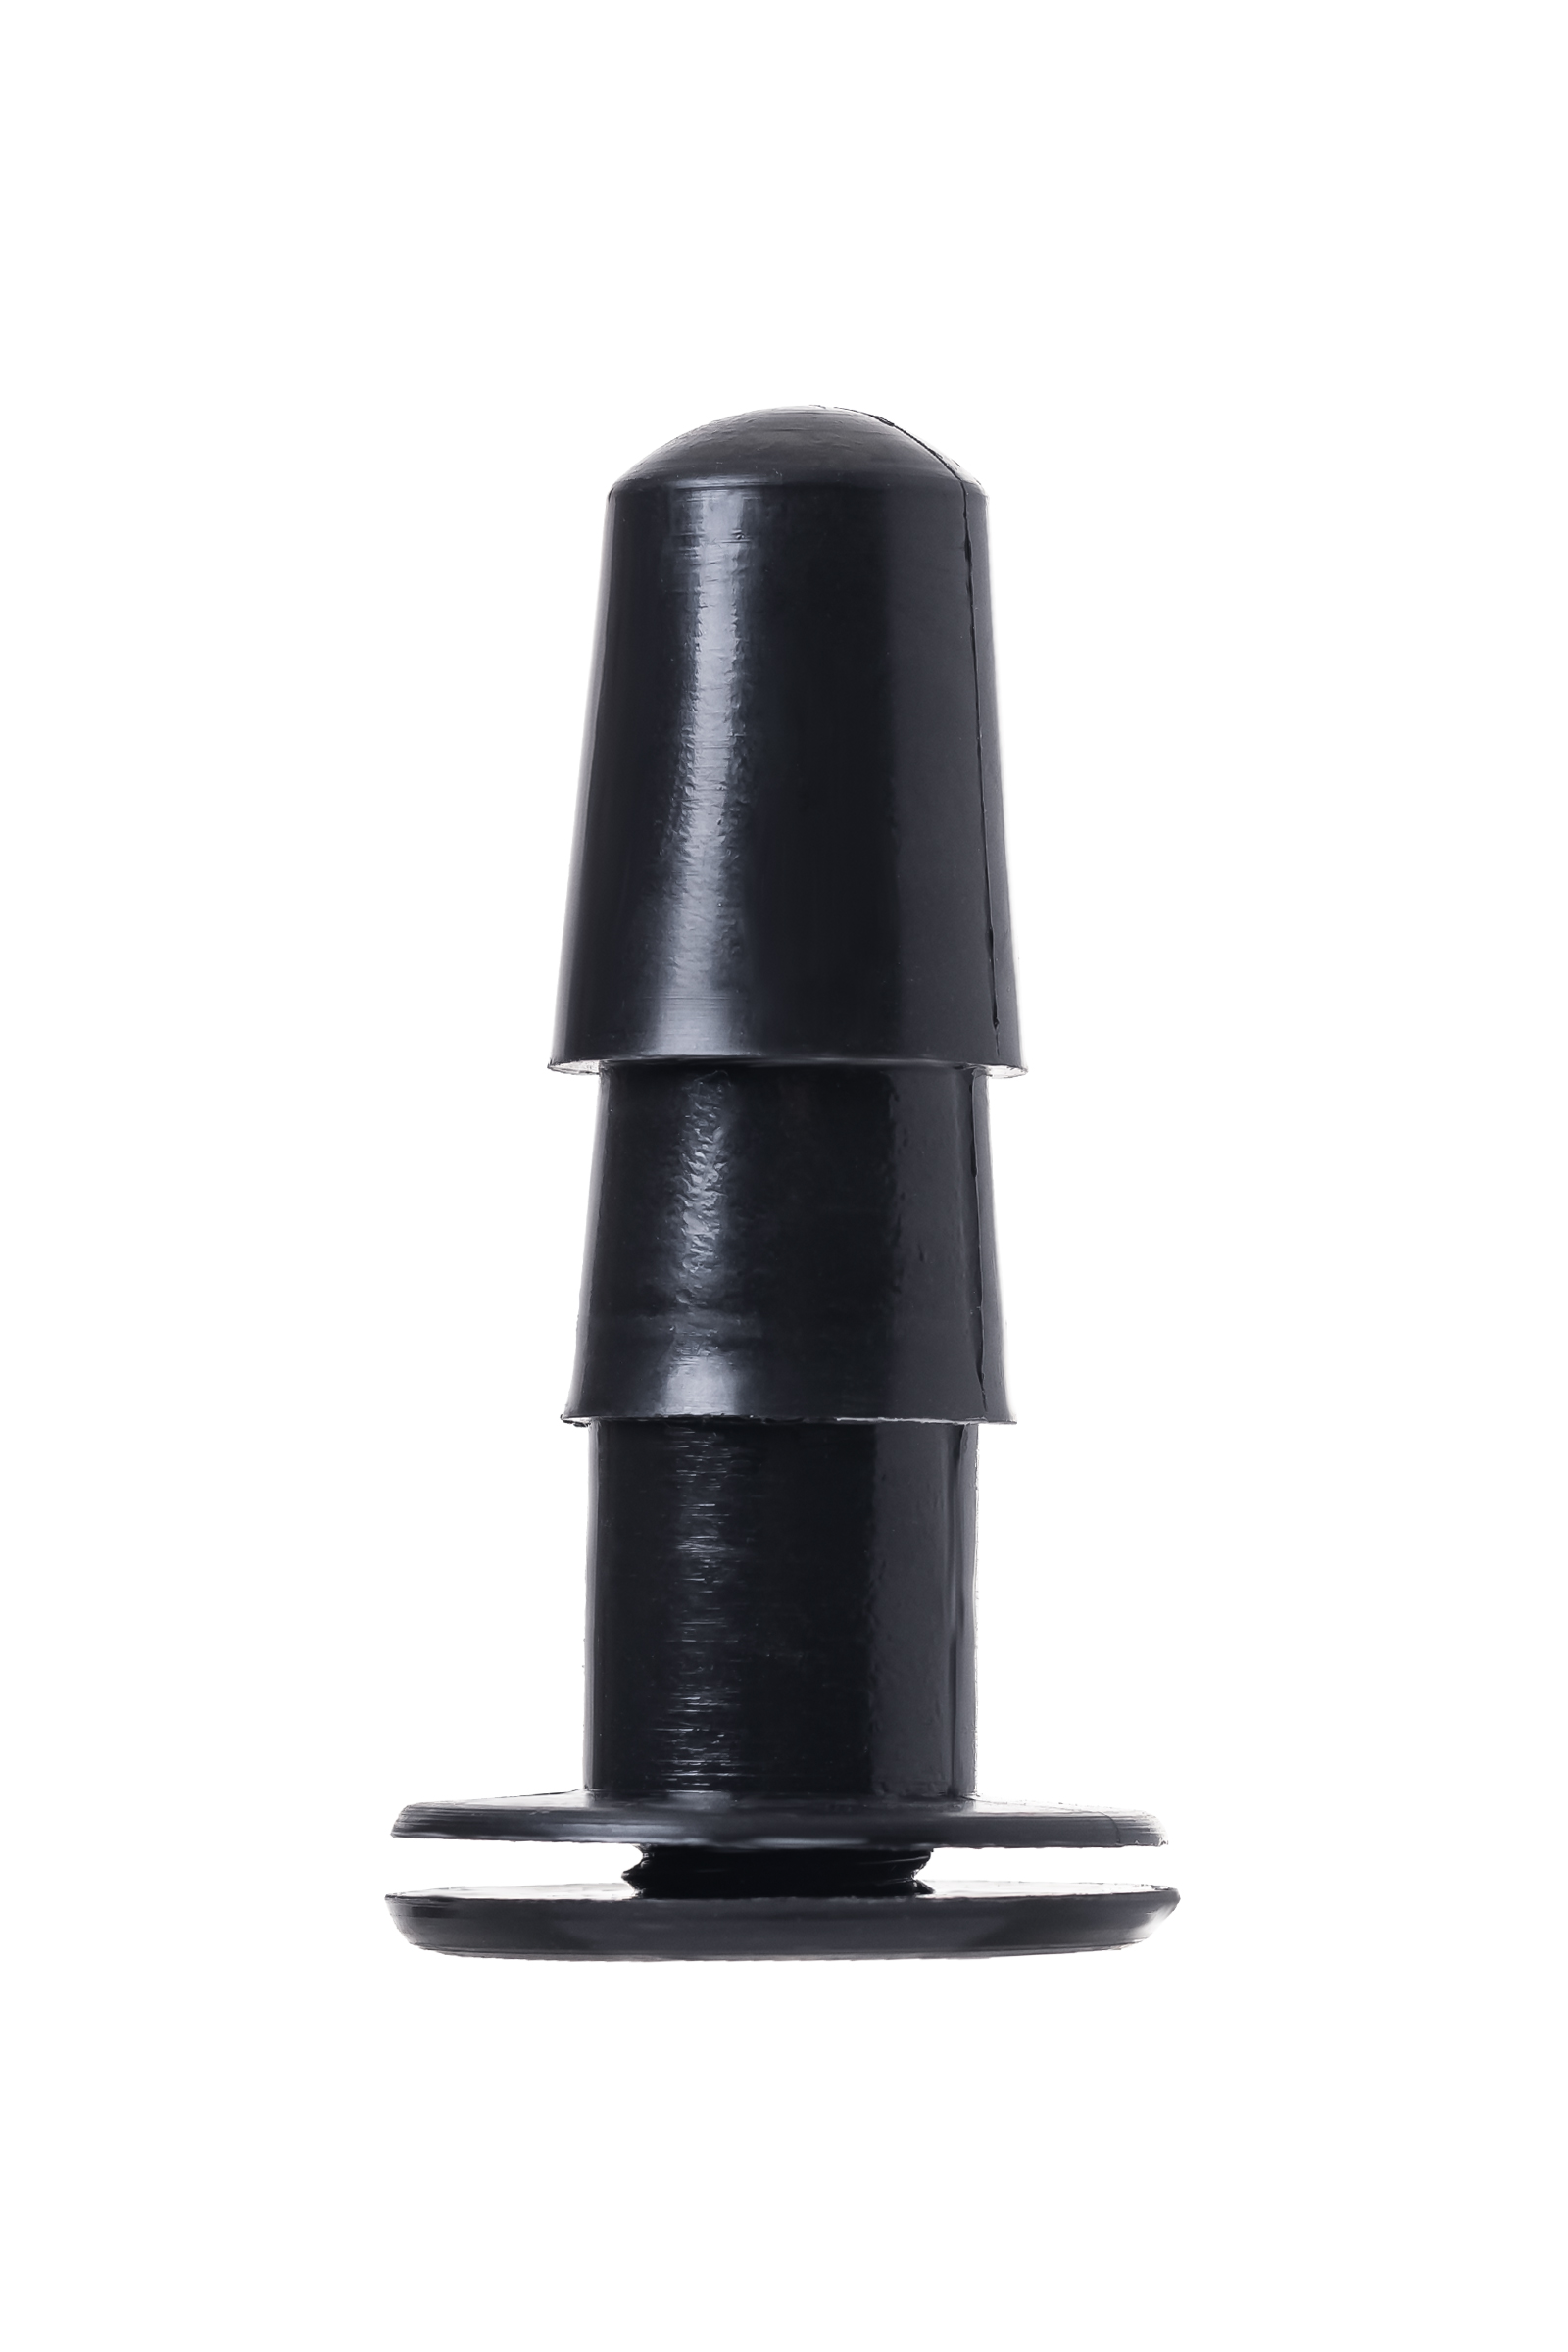 Насадка для страпона RealStick Strap-On by TOYFA Axel, PVC, чёрный, 17,5 см. Фото N5